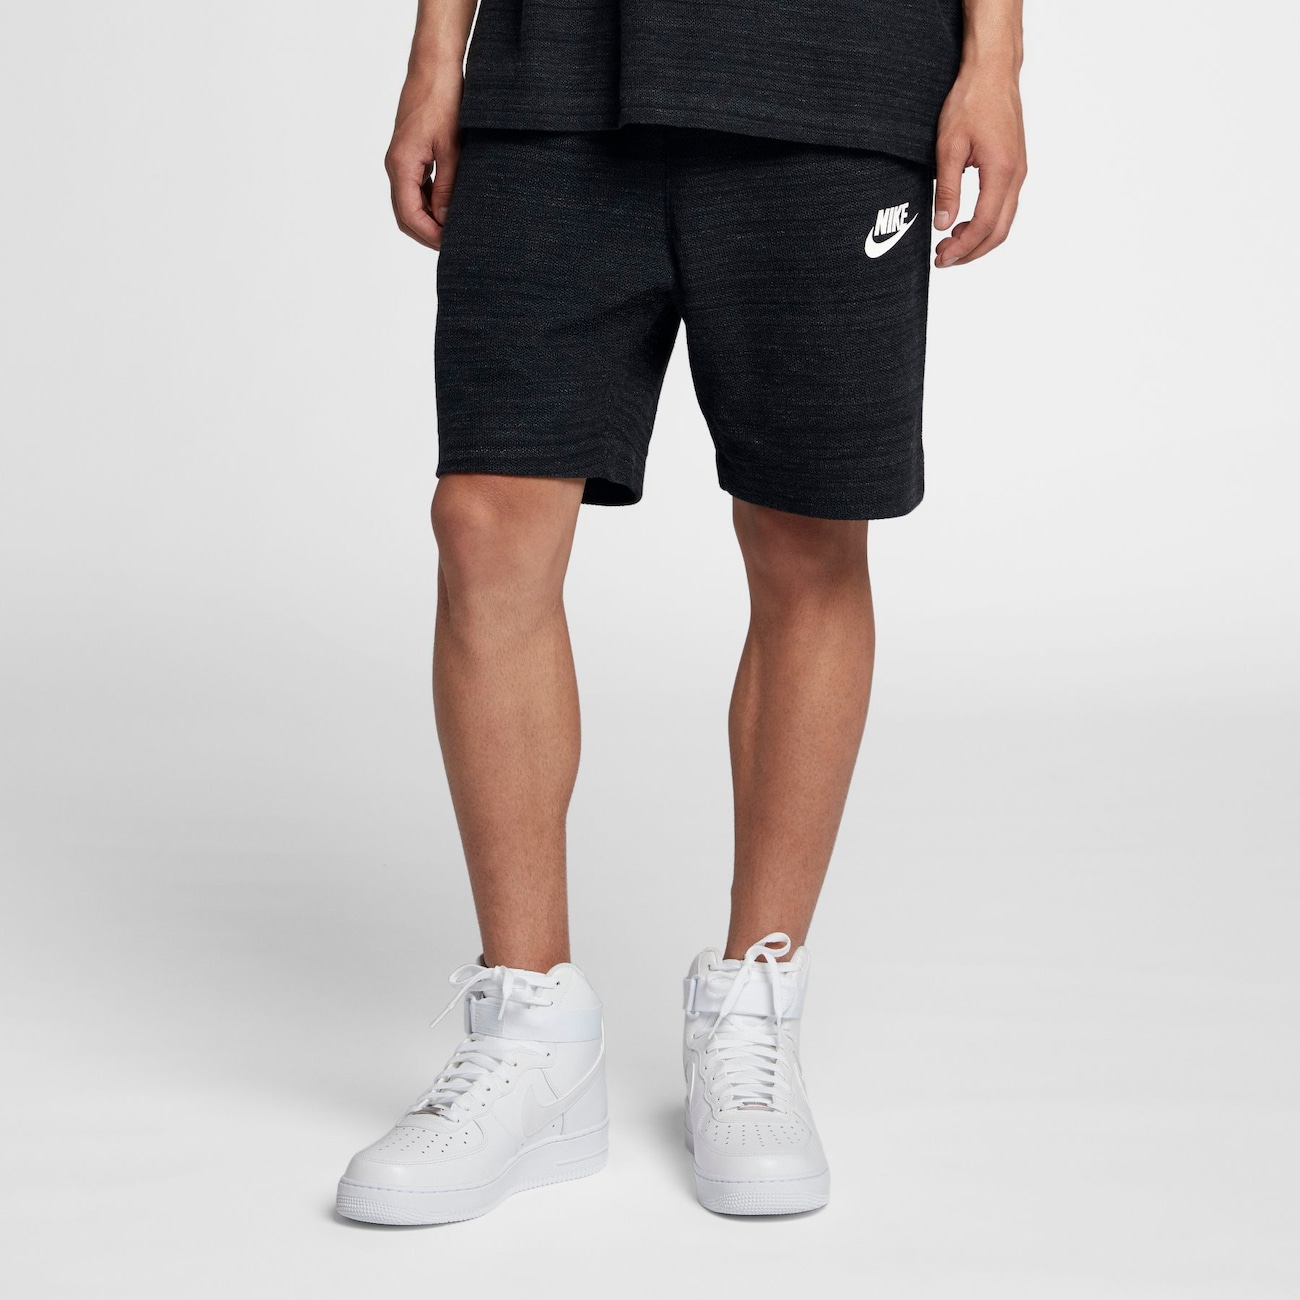 Shorts Nike Sportswear Advance 15 Masculino - Foto 1